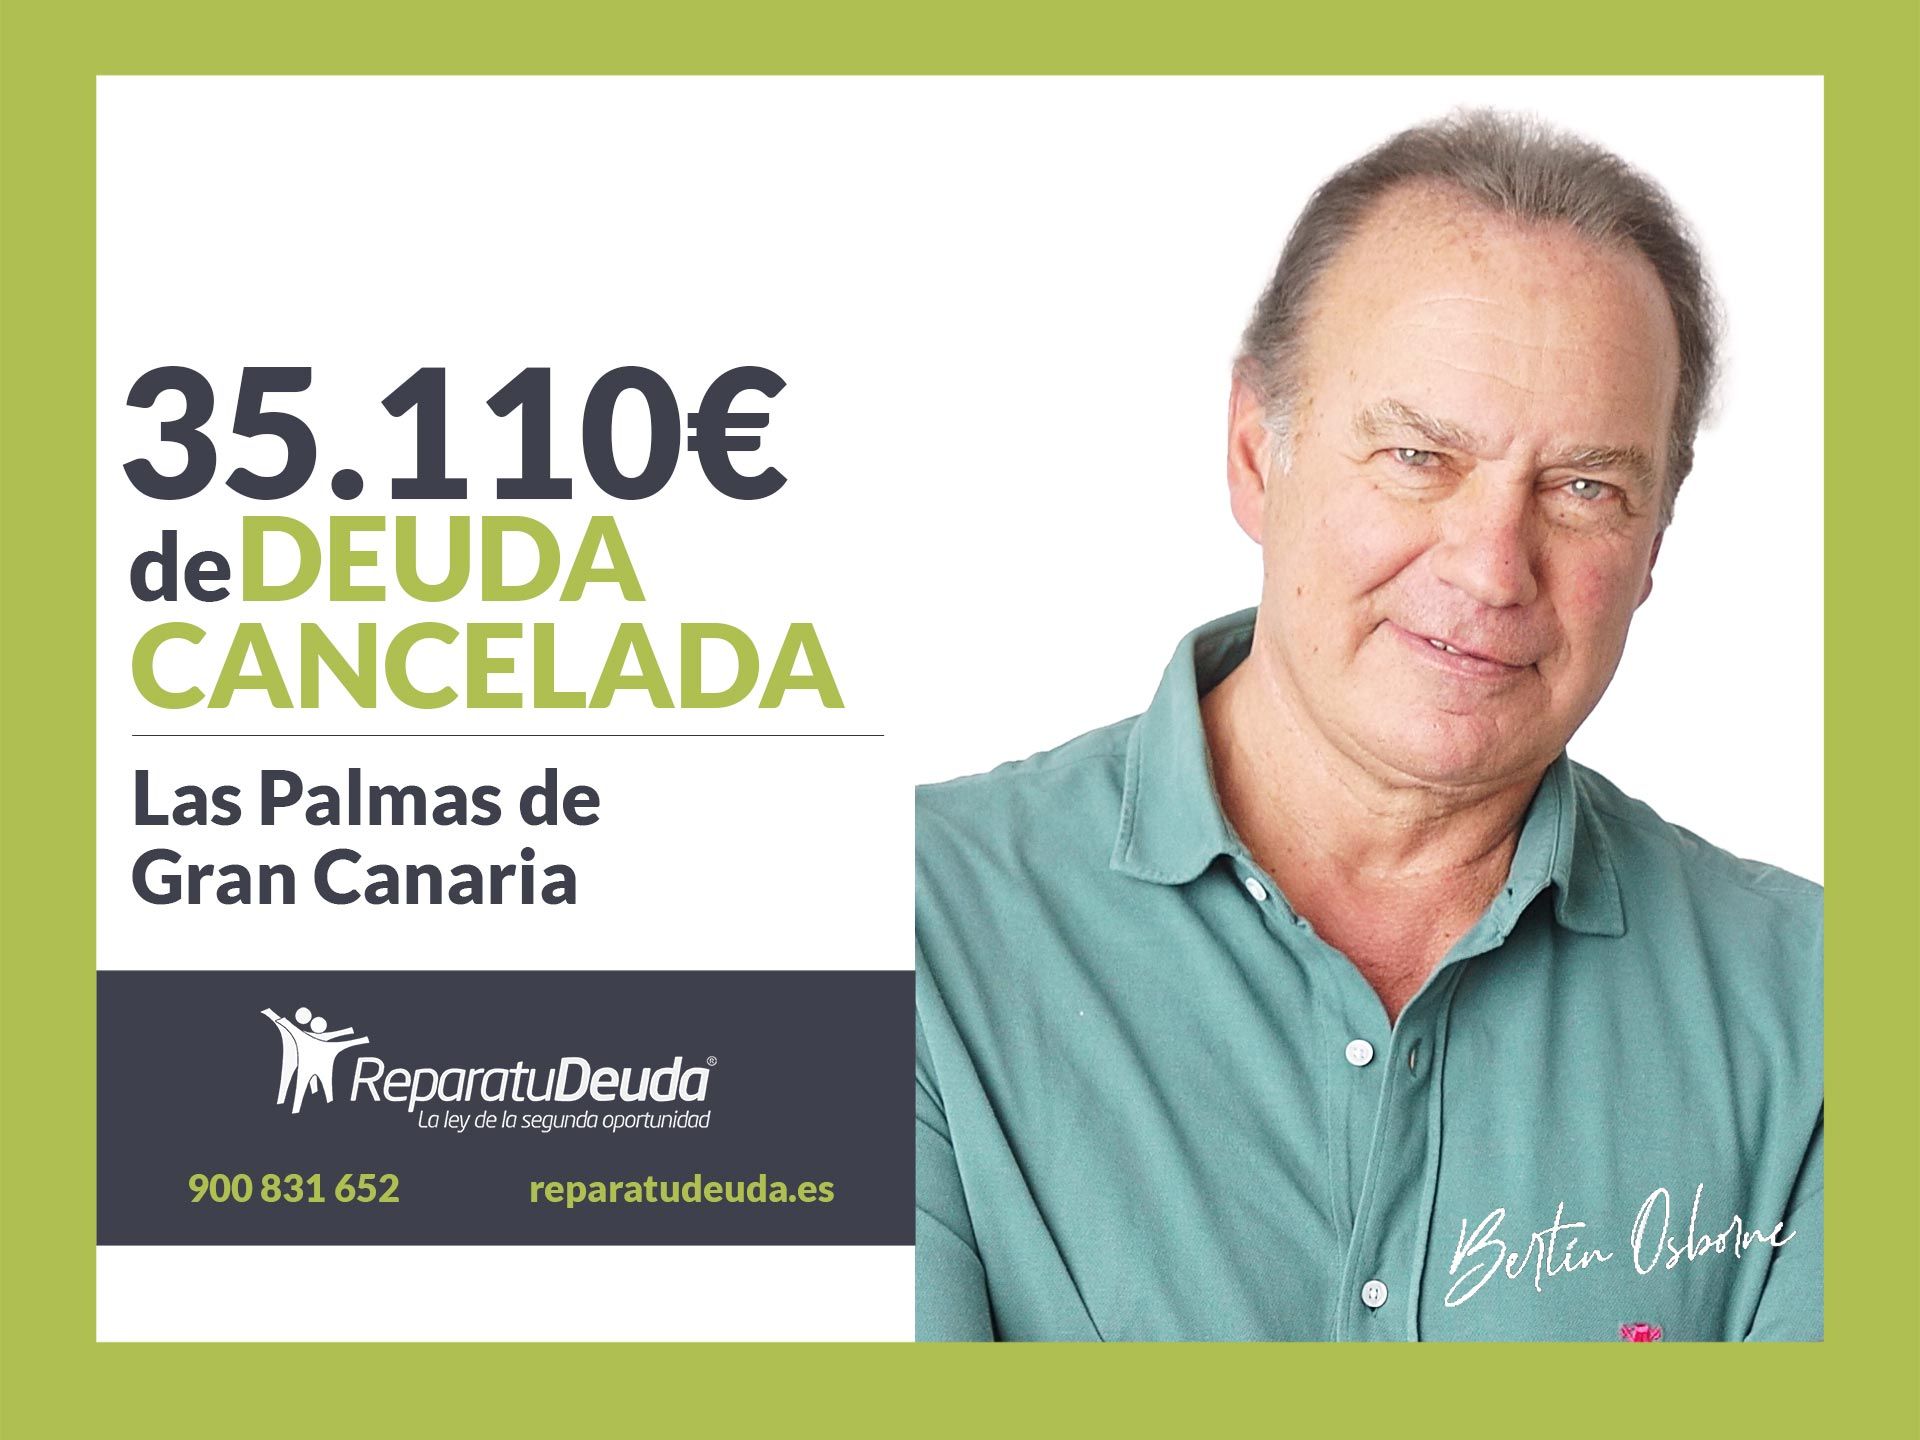 Repara tu Deuda cancela 35.110? en Las Palmas de Gran Canaria (Canarias) con la Ley de Segunda Oportunidad